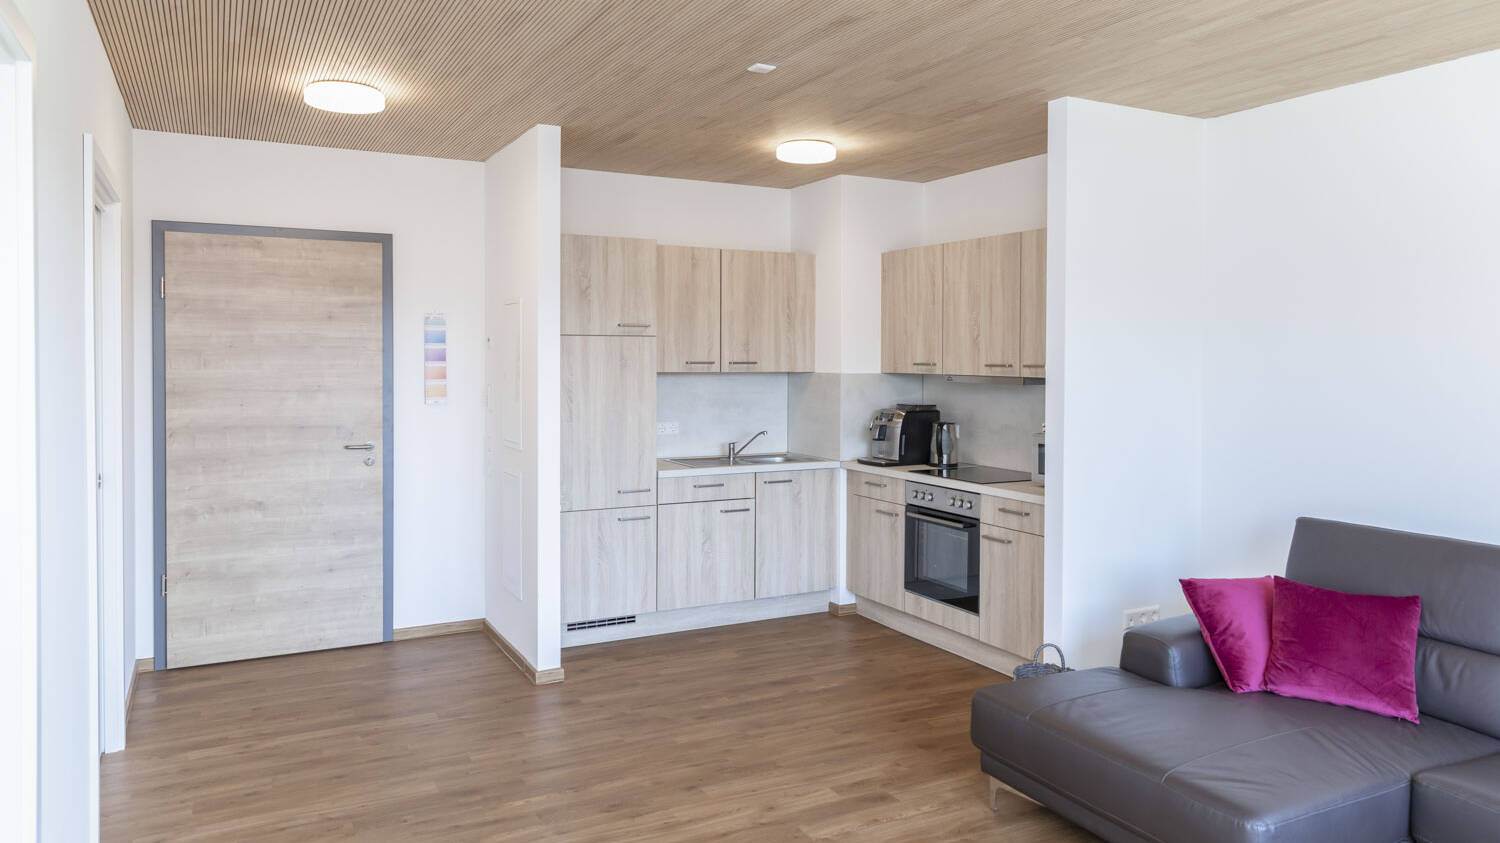 Die kleine Wohnung wirkt durch die Verwendung von viel Holz naturnah und punktet zusätzlich mit Wohnqualitäten wie optimaler Raumakustik.